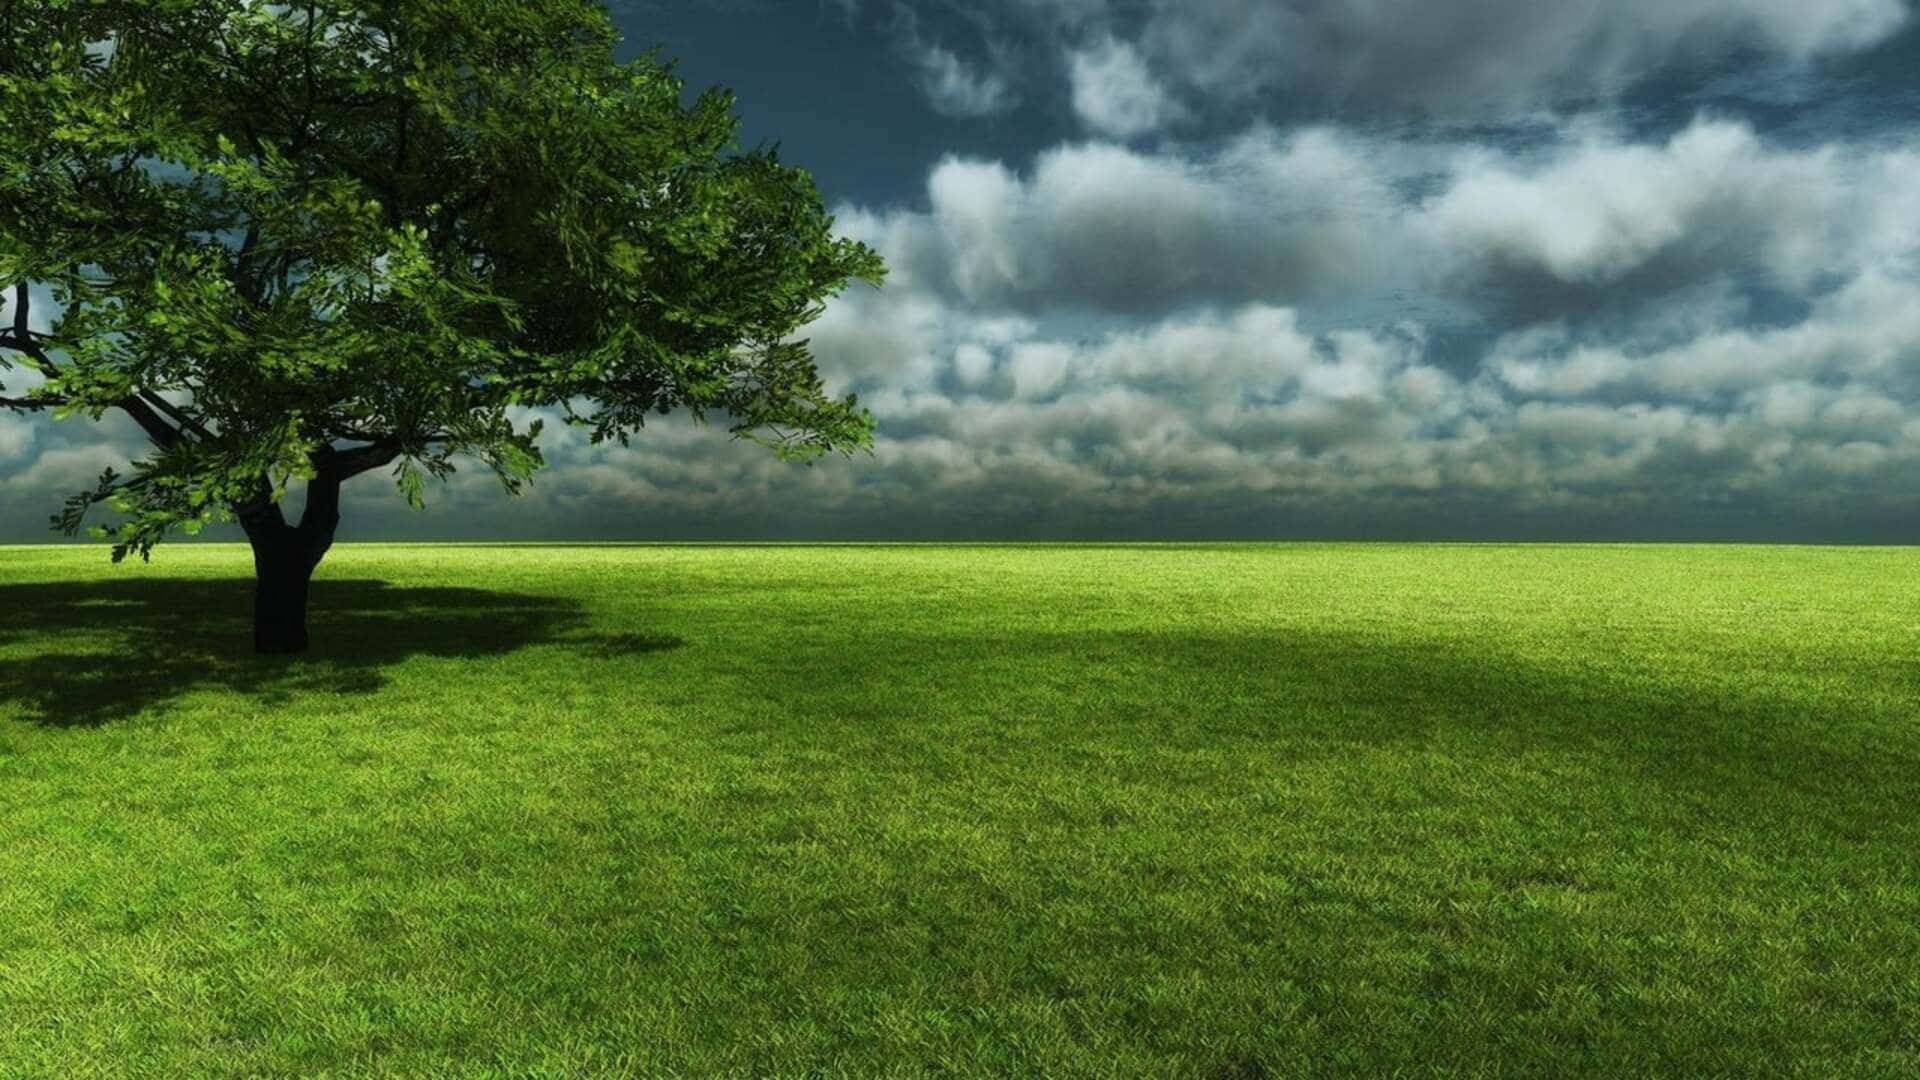 Fondode Pantalla De Naturaleza En 1080p: Nubes Oscuras Y Campo Verde.